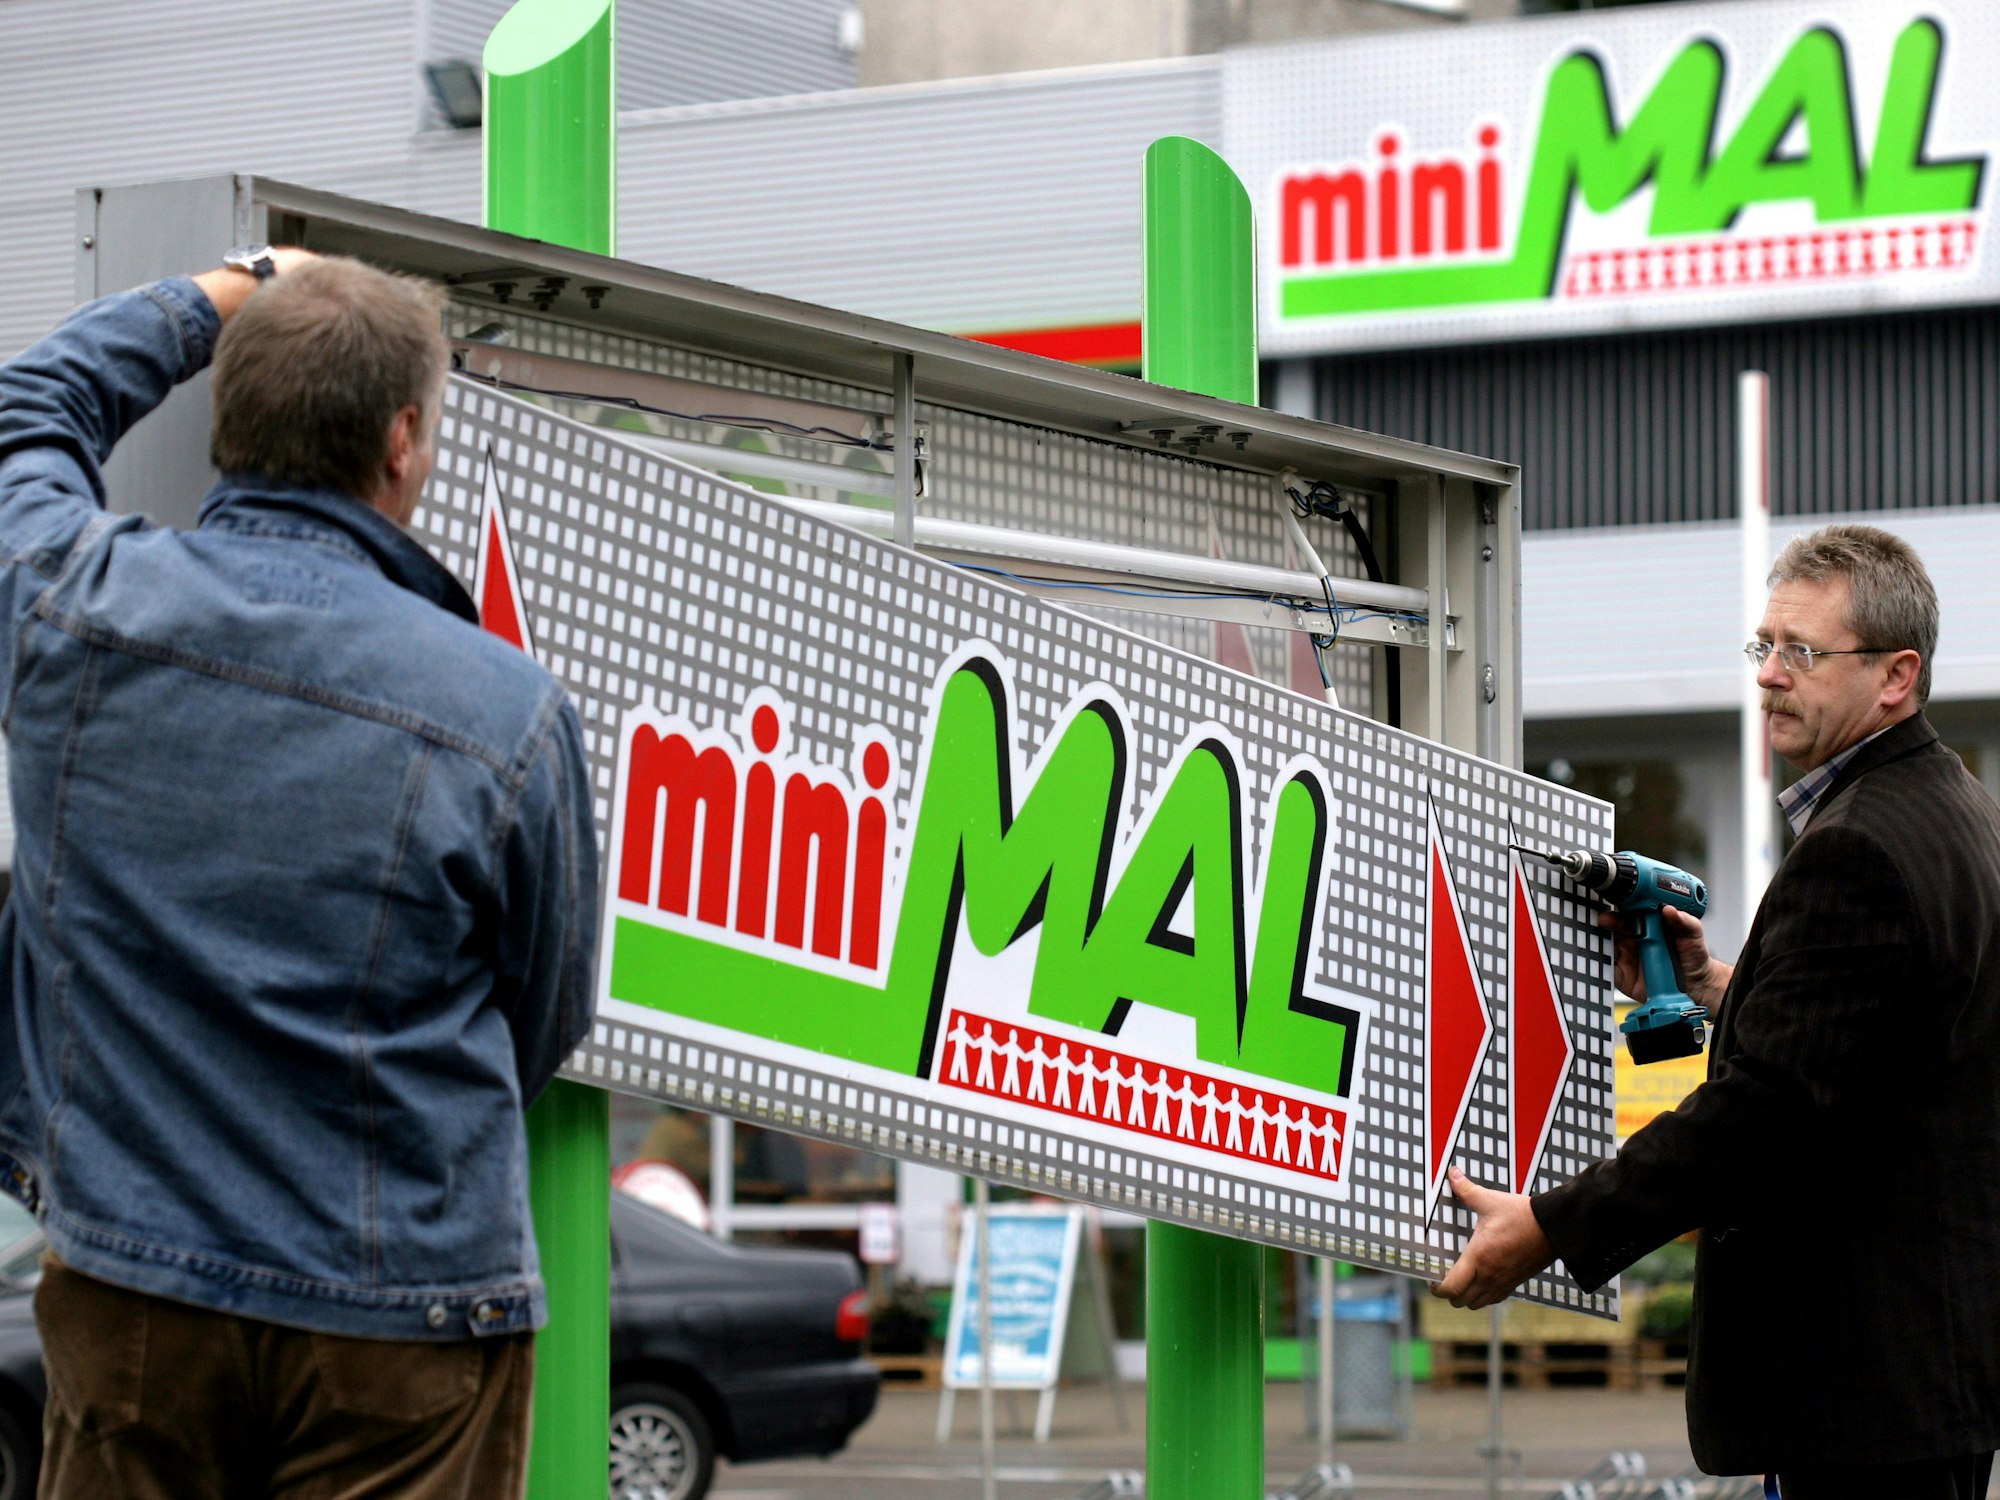 Mitarbeiter einer Beschriftungsfirma entfernen am Donnerstag (24.08.2006) vor einem miniMal Supermarkt in Köln das Logo.